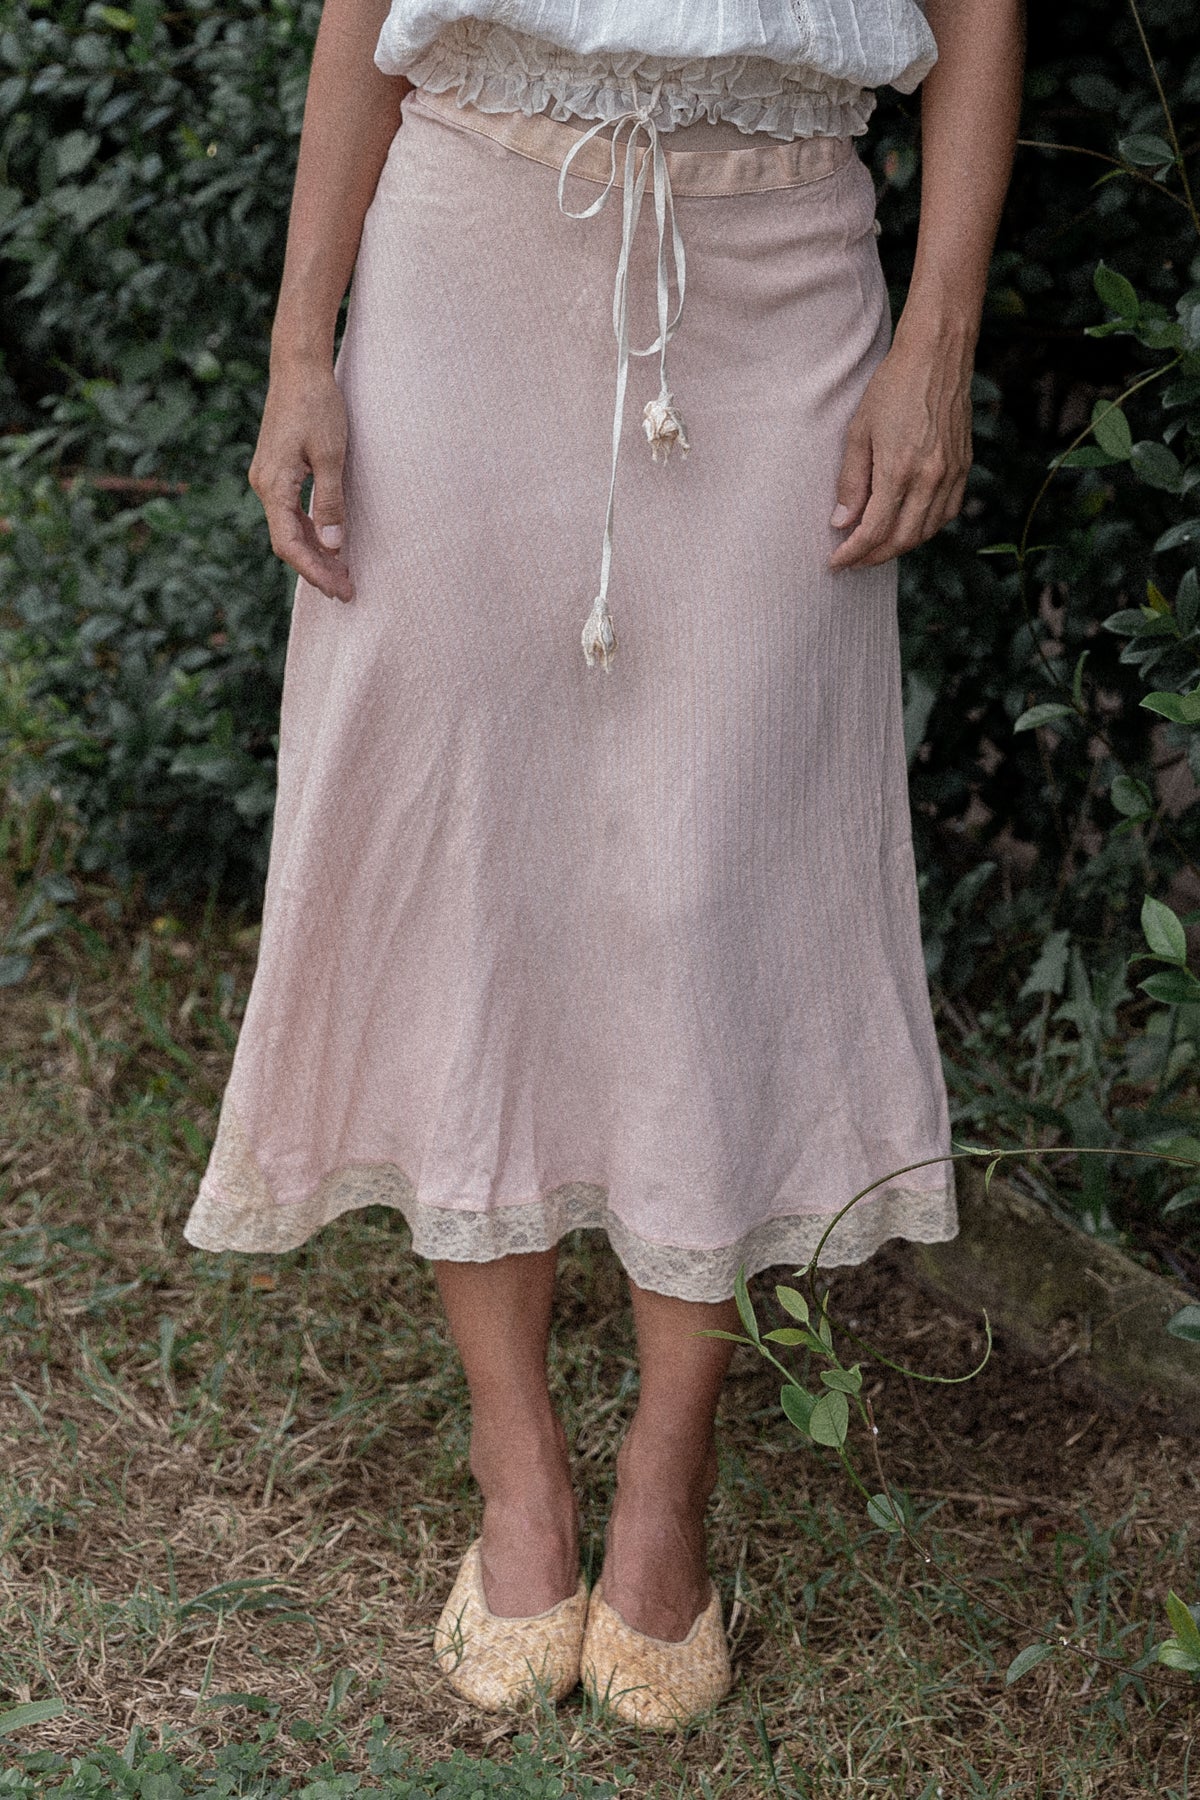 VINTAGE 1940's Ecru Lace Trimmed Pink Skirt S/M